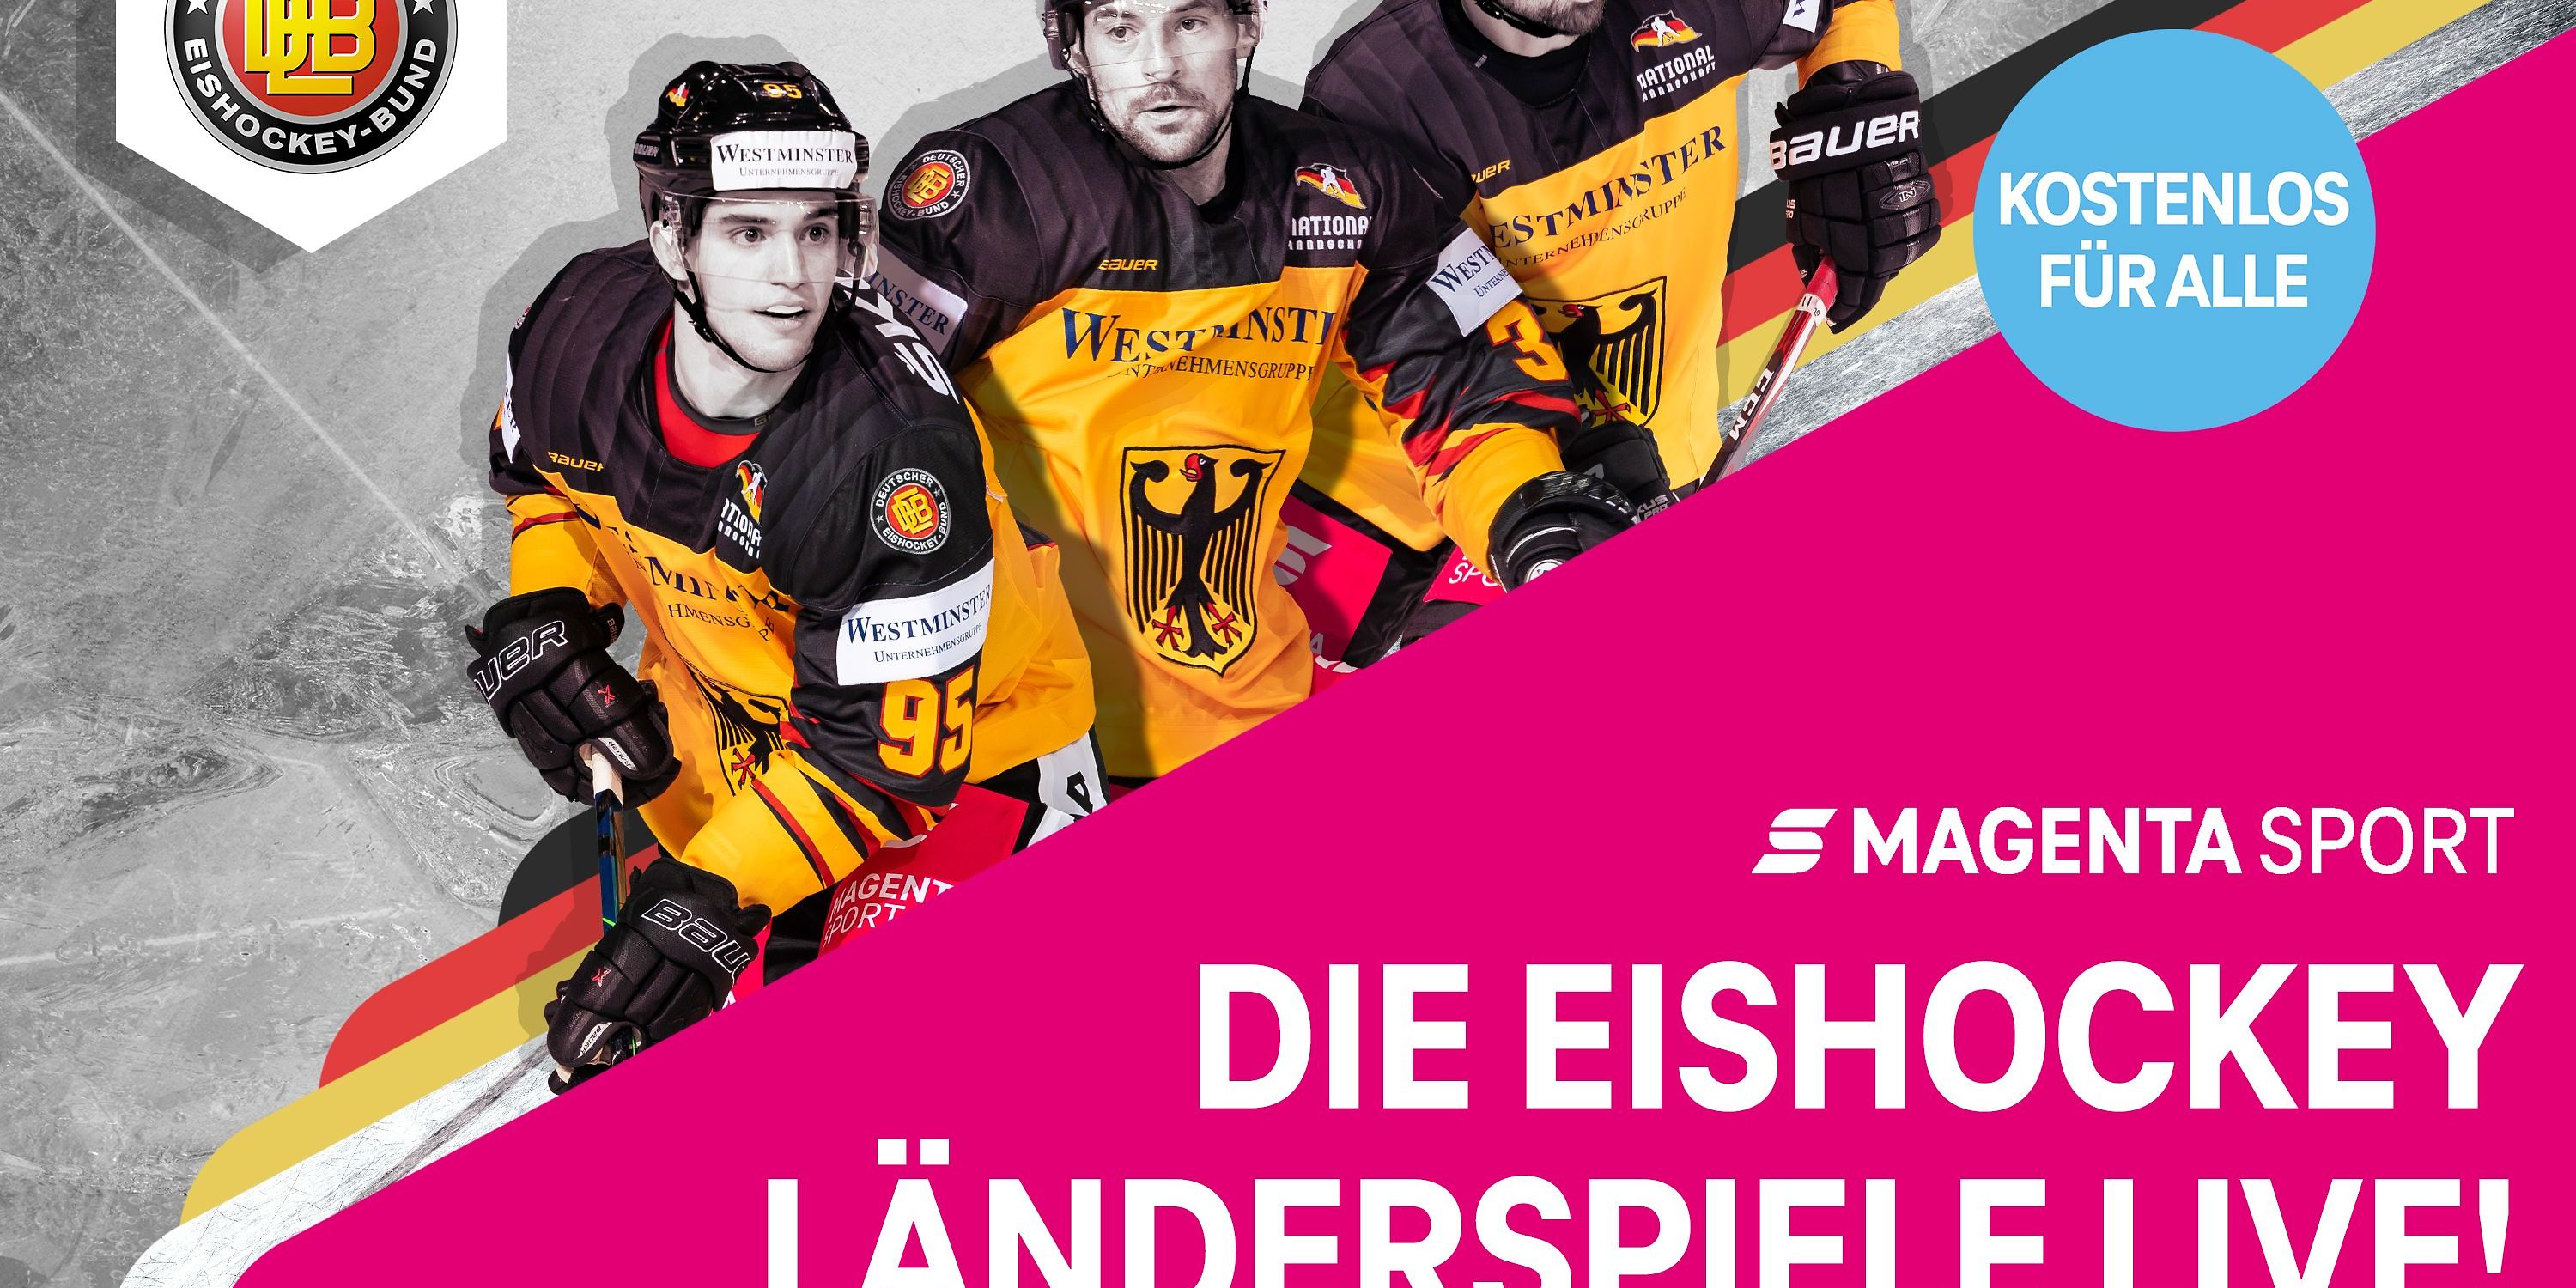 Magenta Sport Die Eishockey-Länderspiele live im FreeTV! Deutsche Telekom